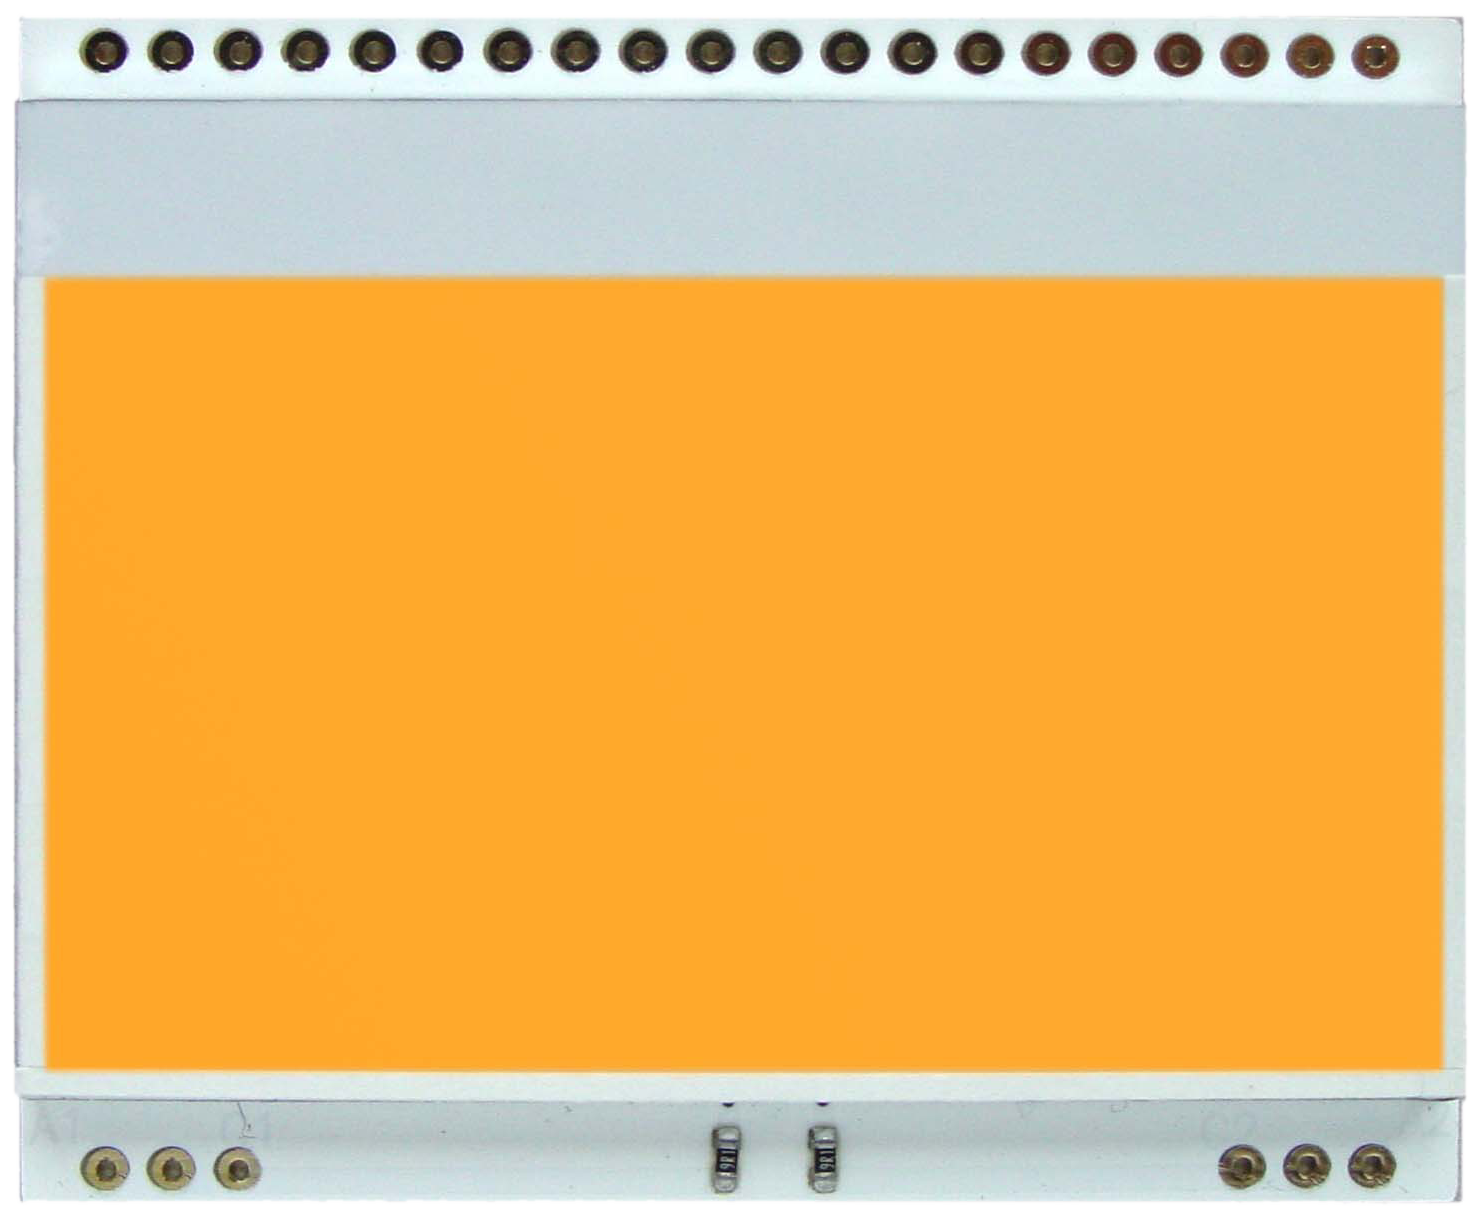 LED backlit unit for EA DOGM128-6, amber